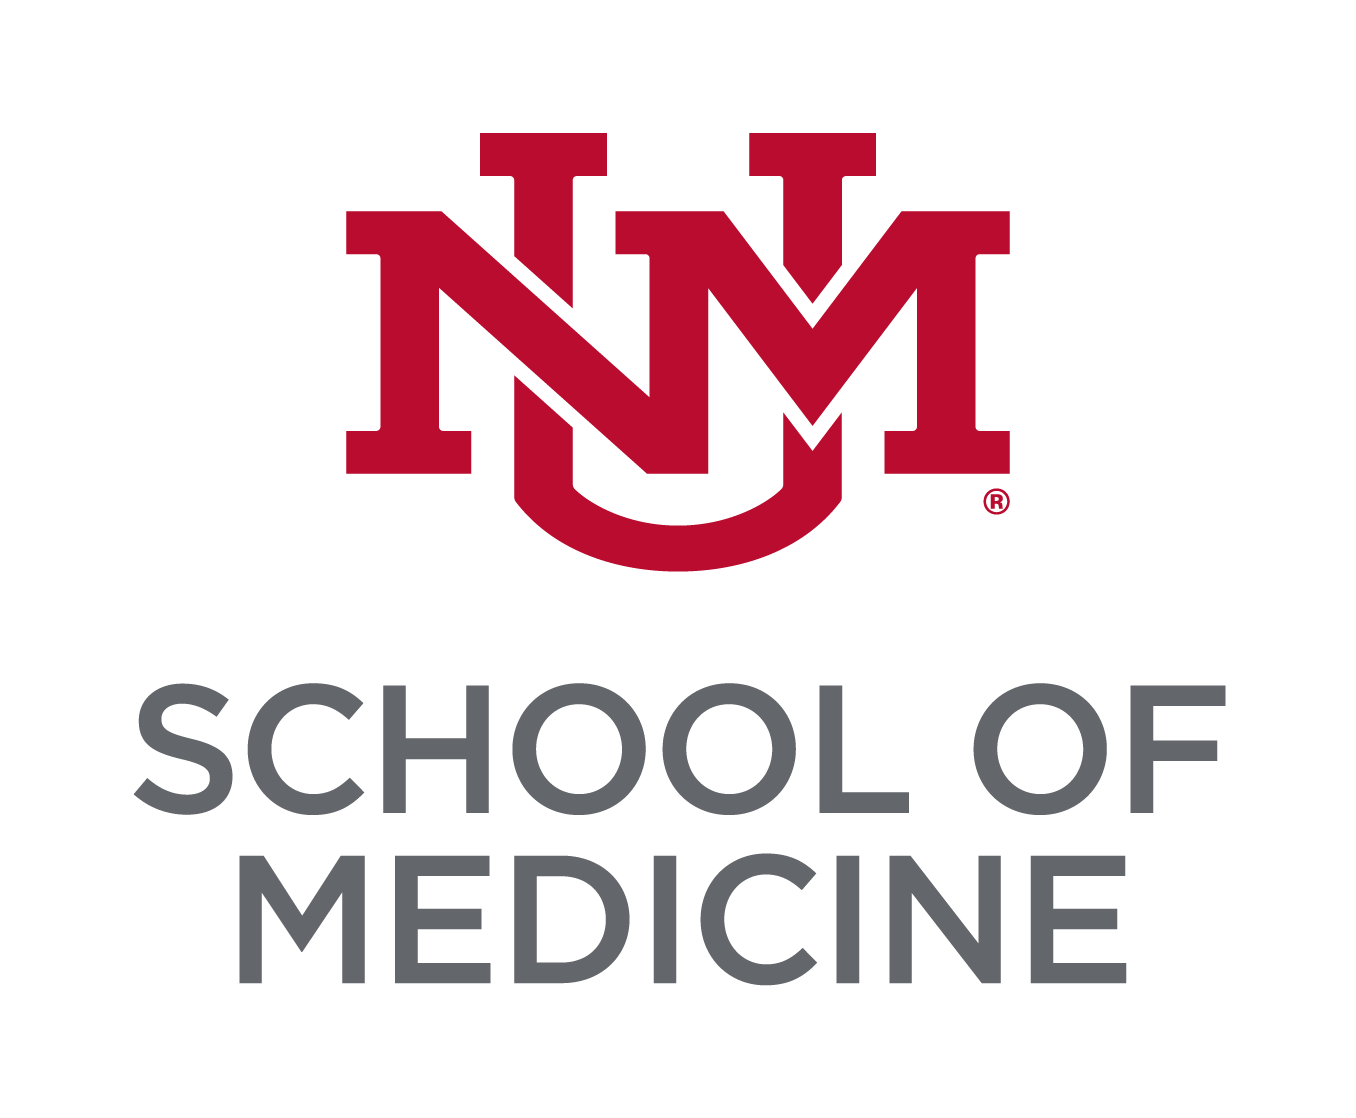 O monograma do bloco UNM vermelho cereja empilhado acima do título Lobo Gray "School of Medicine".